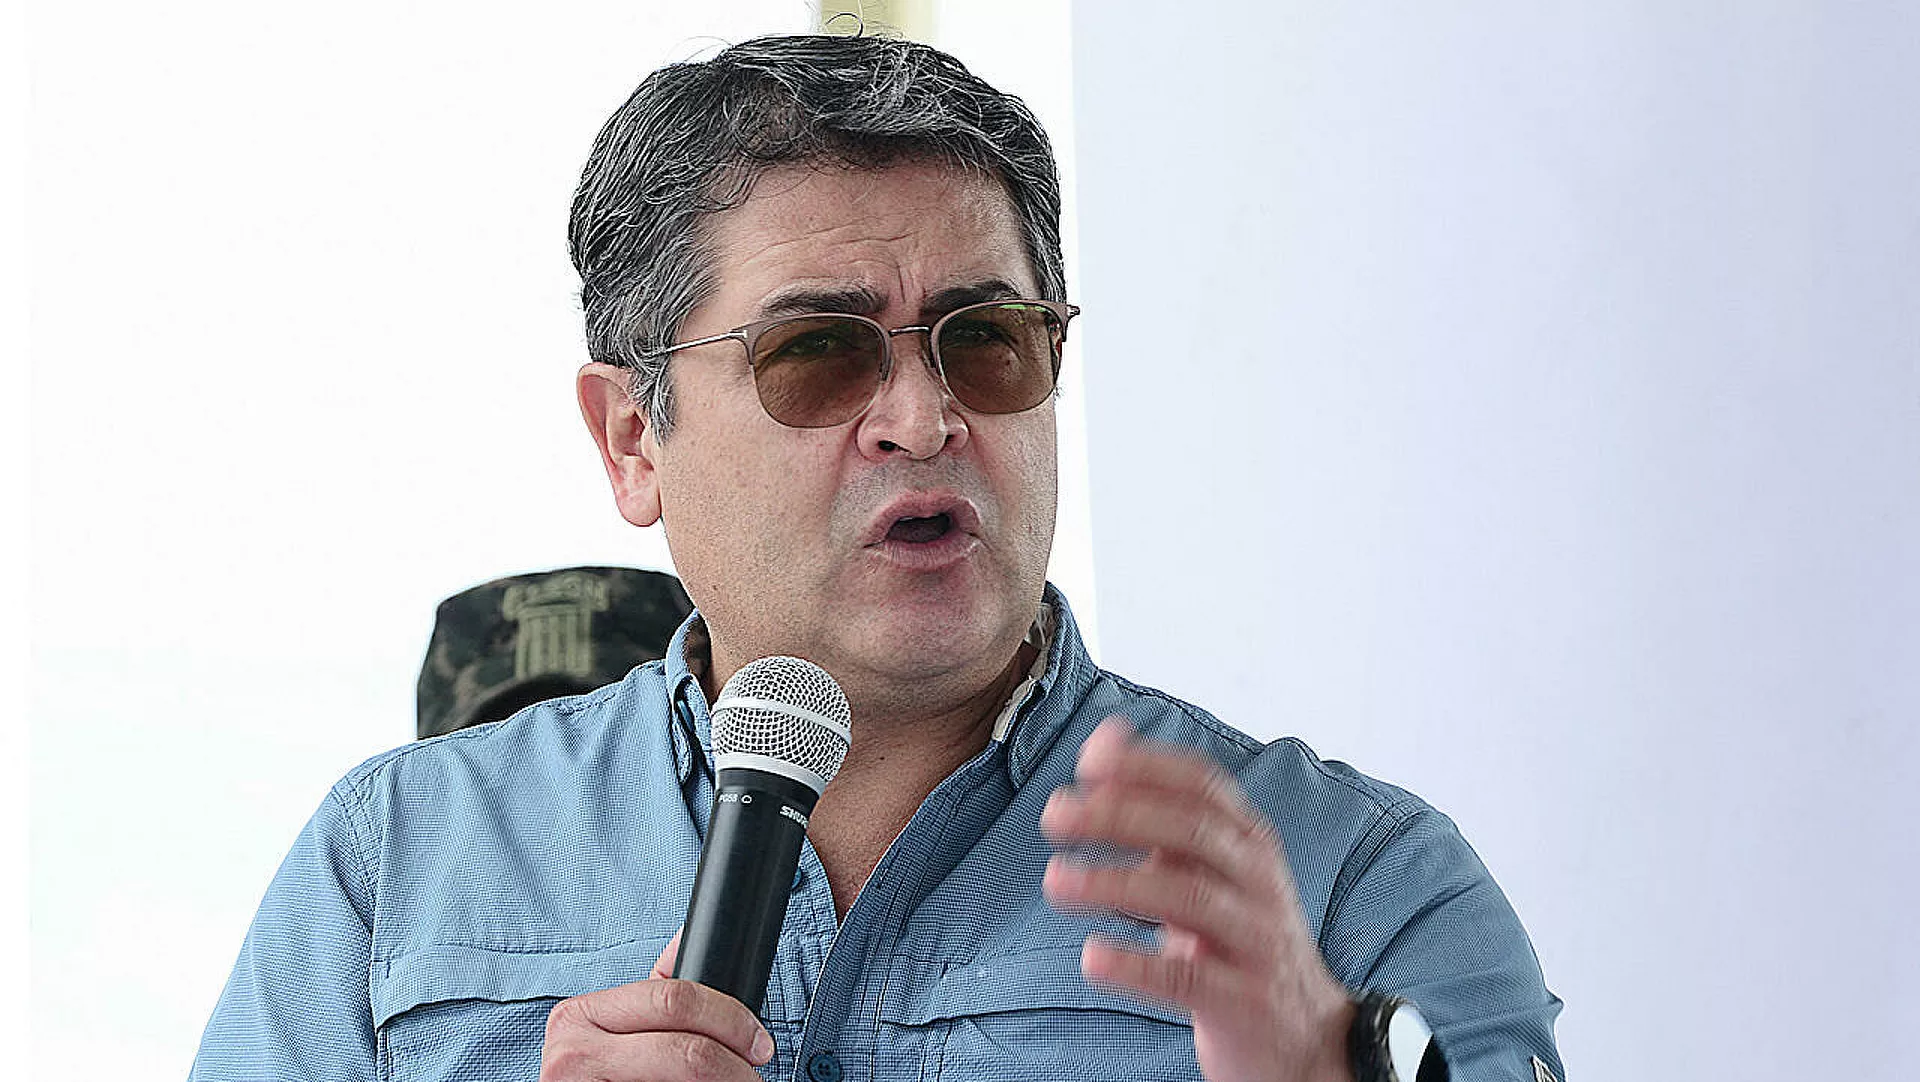  El expresidente hondureño Hernández, dispuesto a colaborar tras pedido de extradición de EEUU